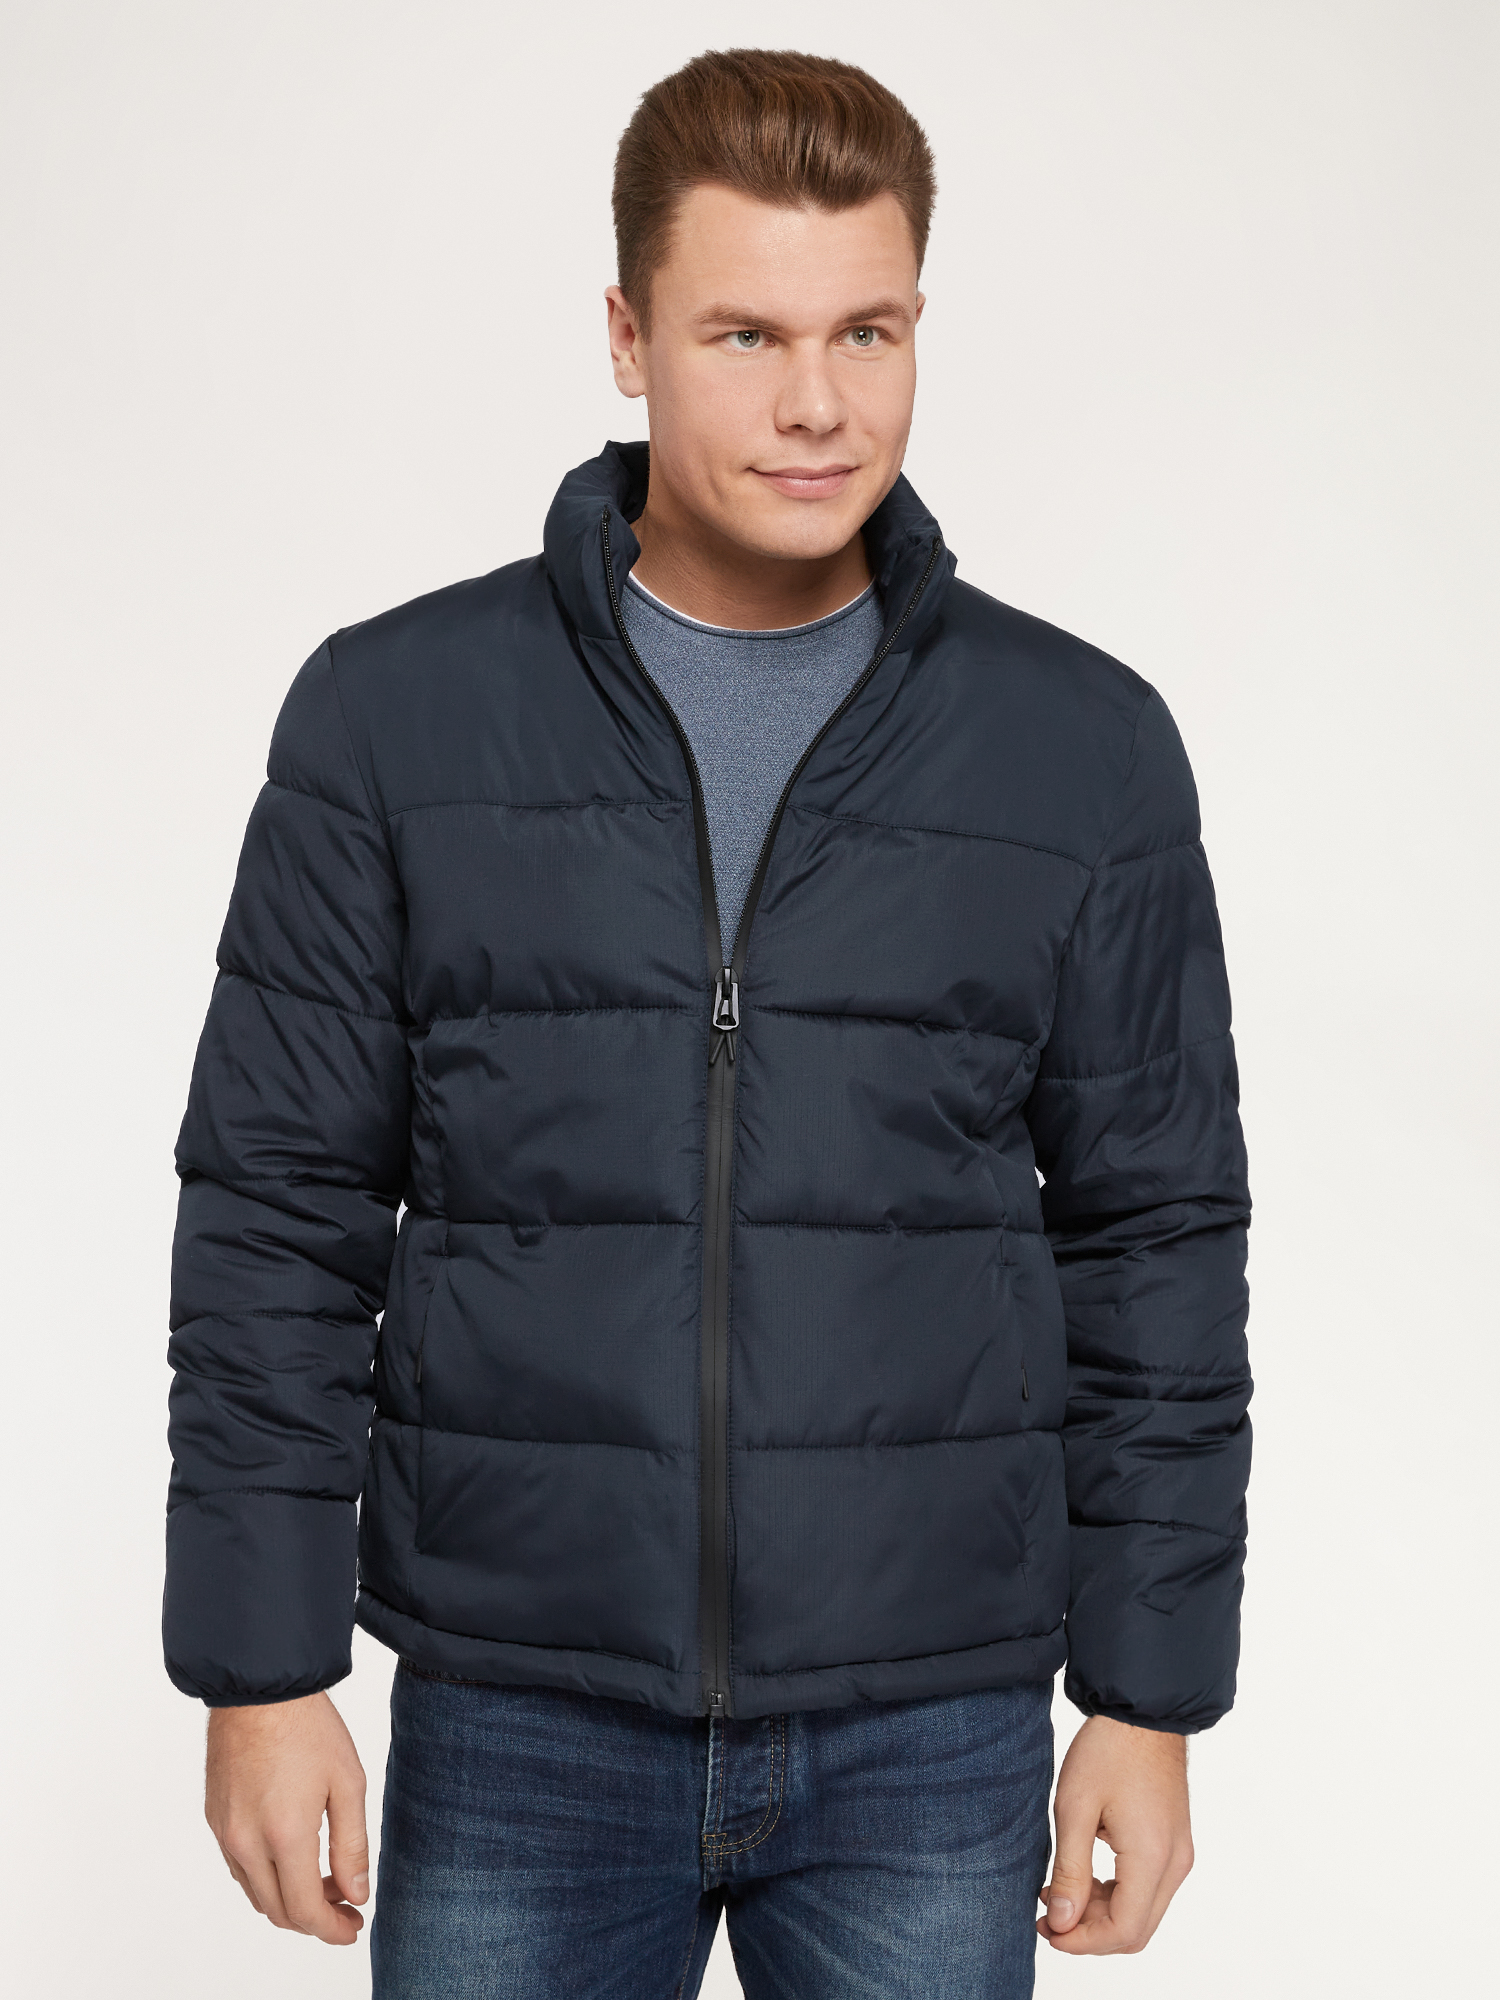 Куртка мужская oodji 1L121005M синяя XL – купить в Москве, цены в интернет-магазинах на Мегамаркет